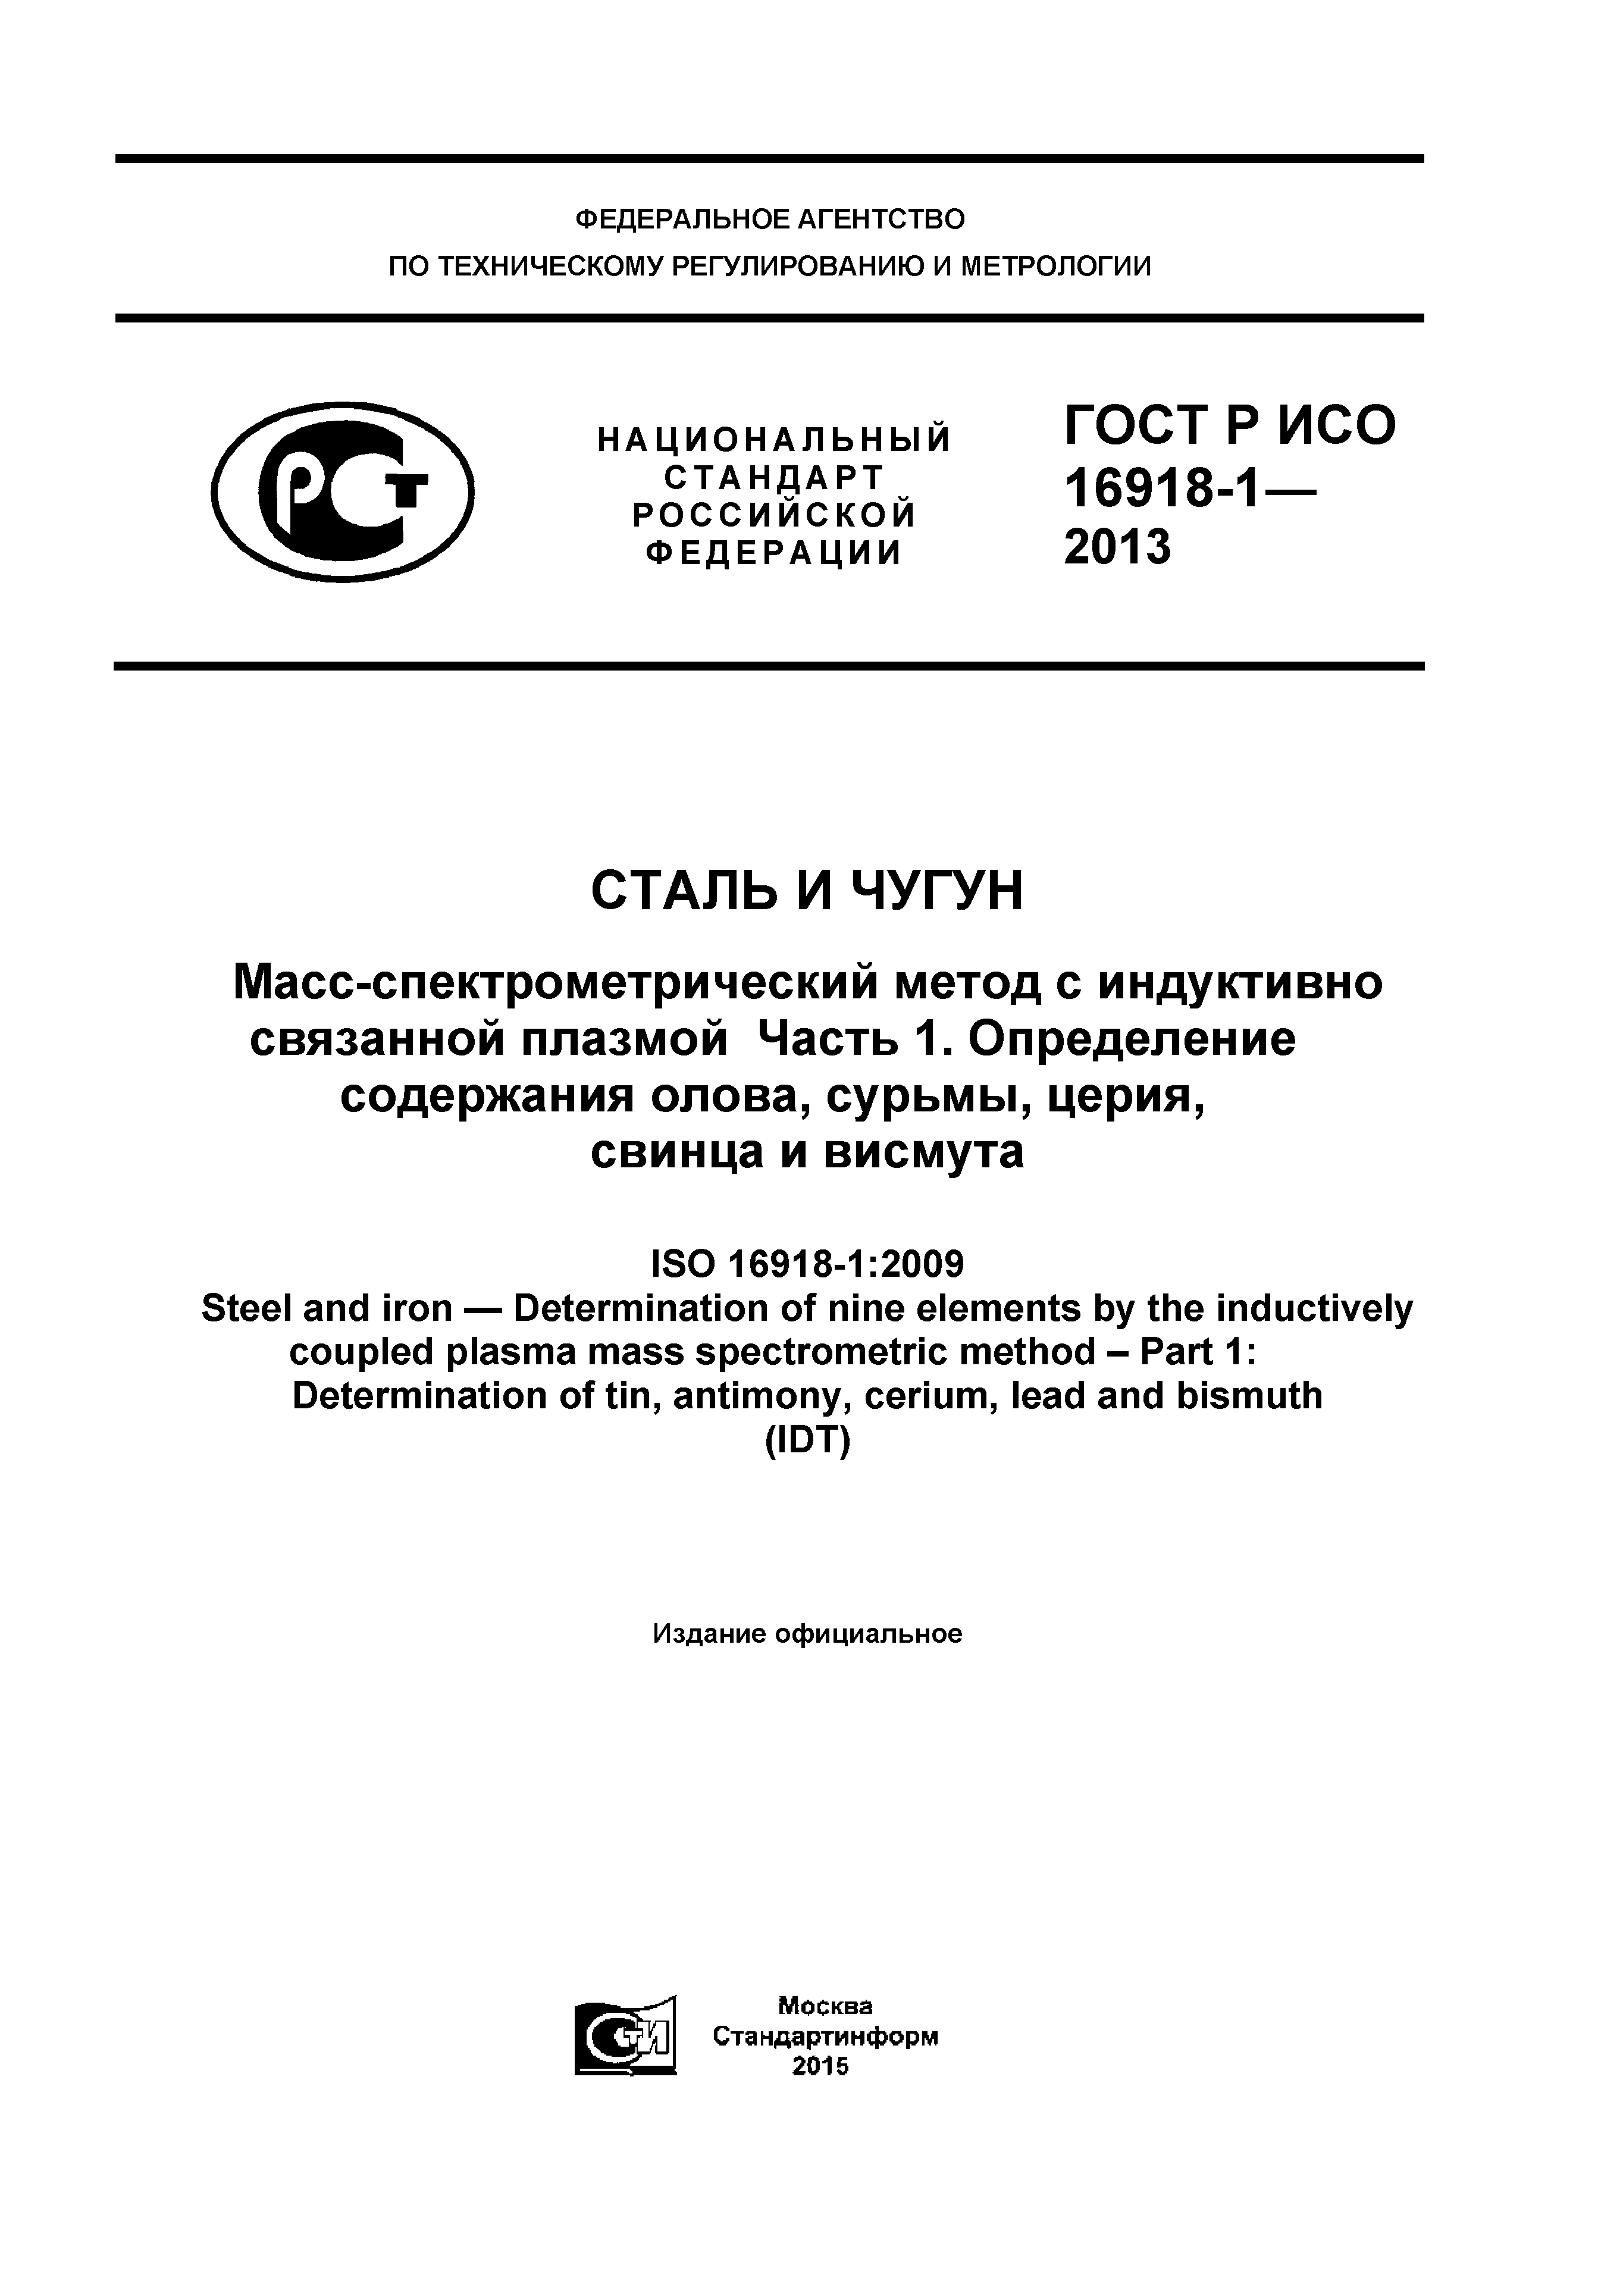 ГОСТ Р ИСО 16918-1-2013